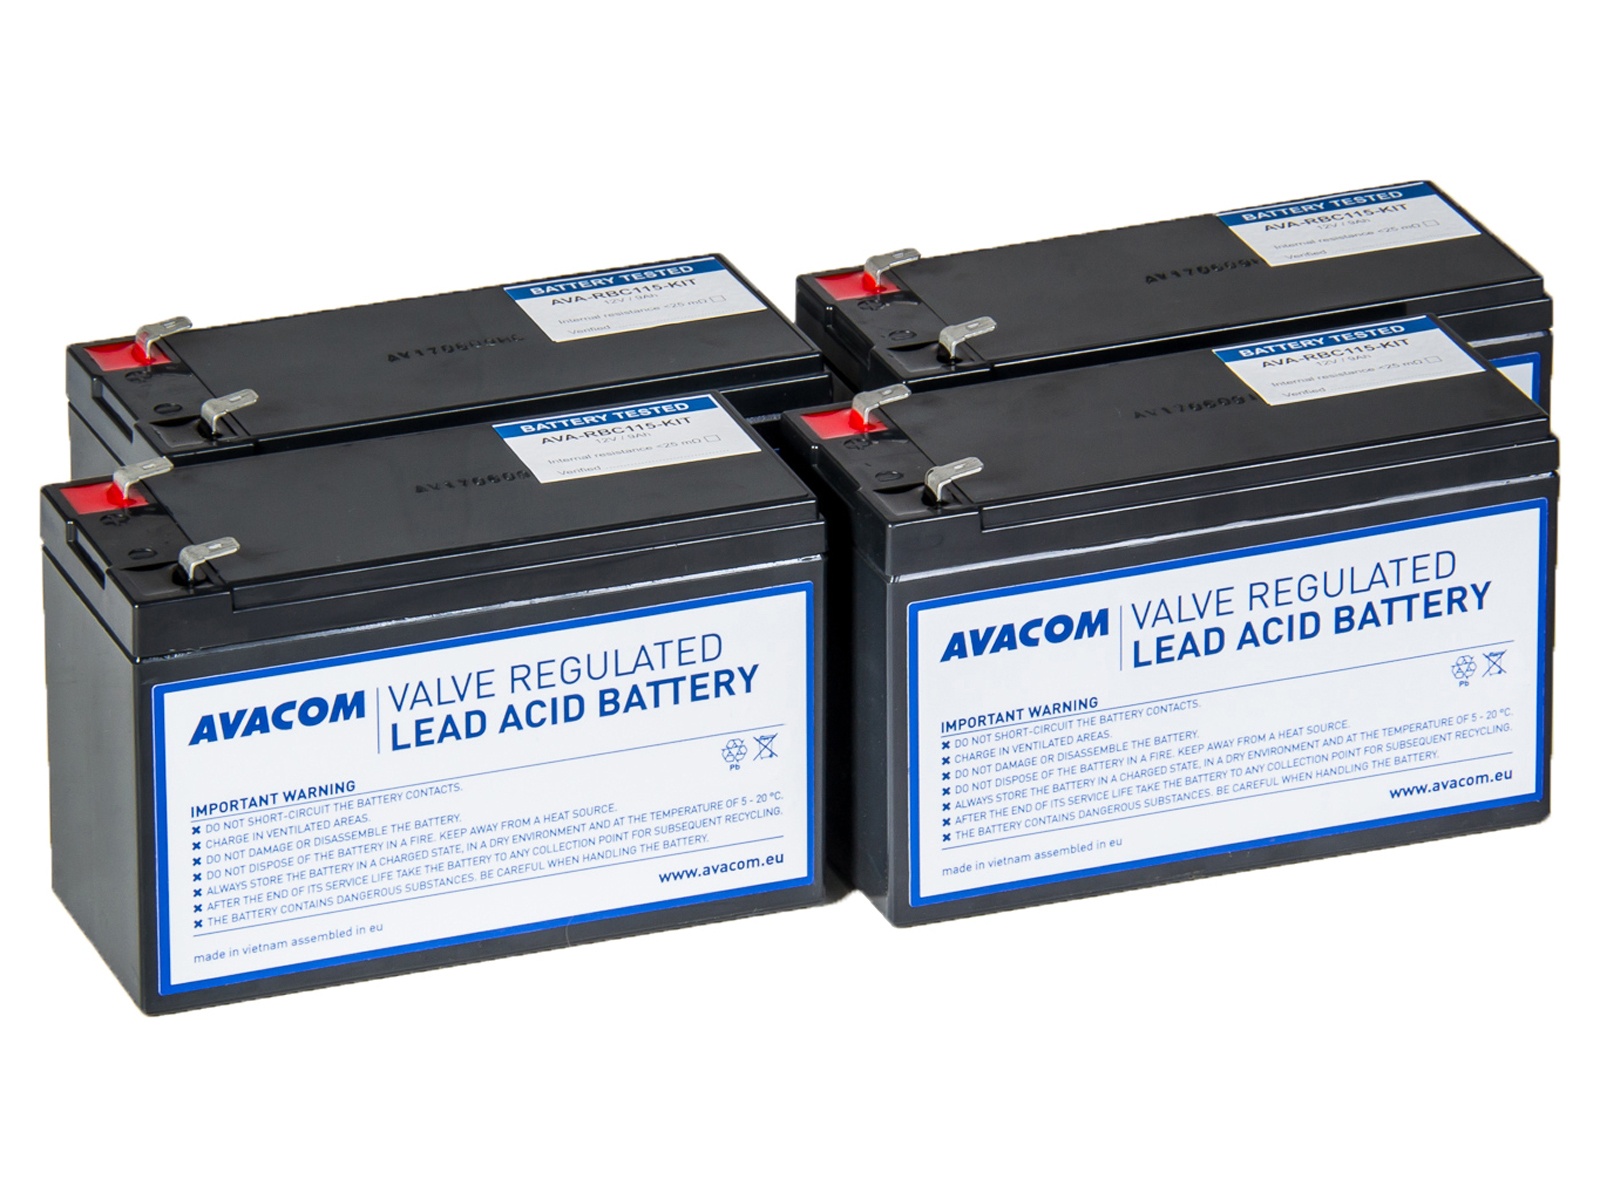 AVACOM RBC115 - kit pro renovaci baterie (4ks baterií)